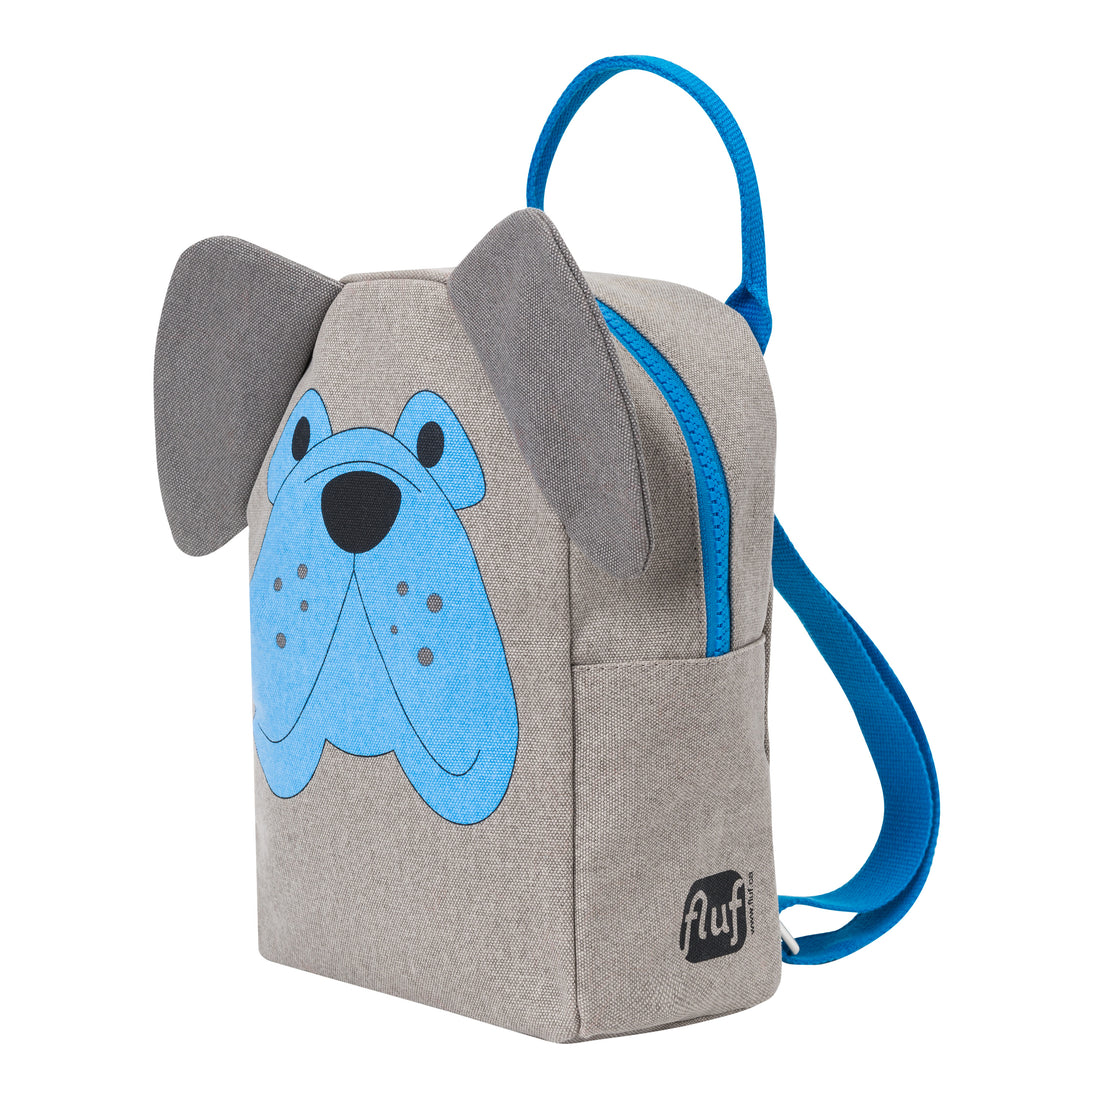 fluf-little-backpack-grey-dog- (2)